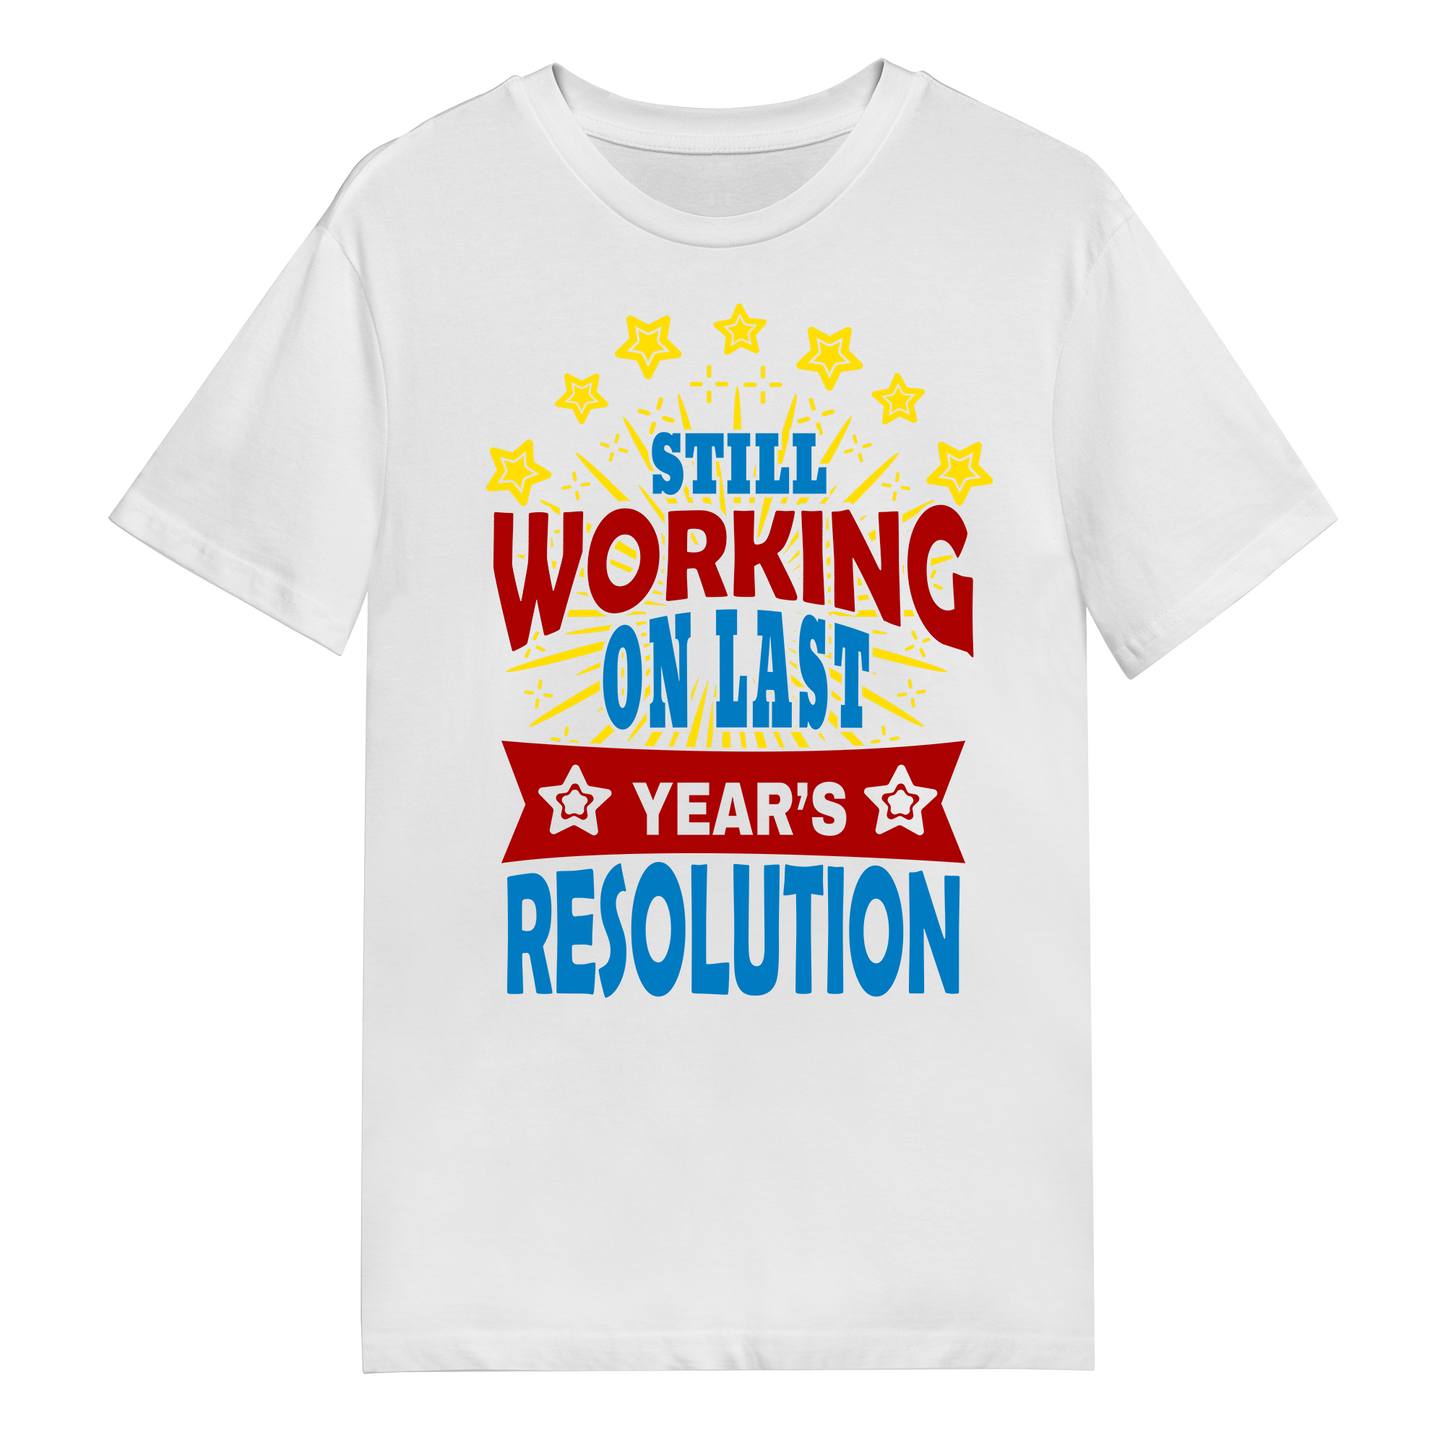 Men's T-Shirt - Resolution